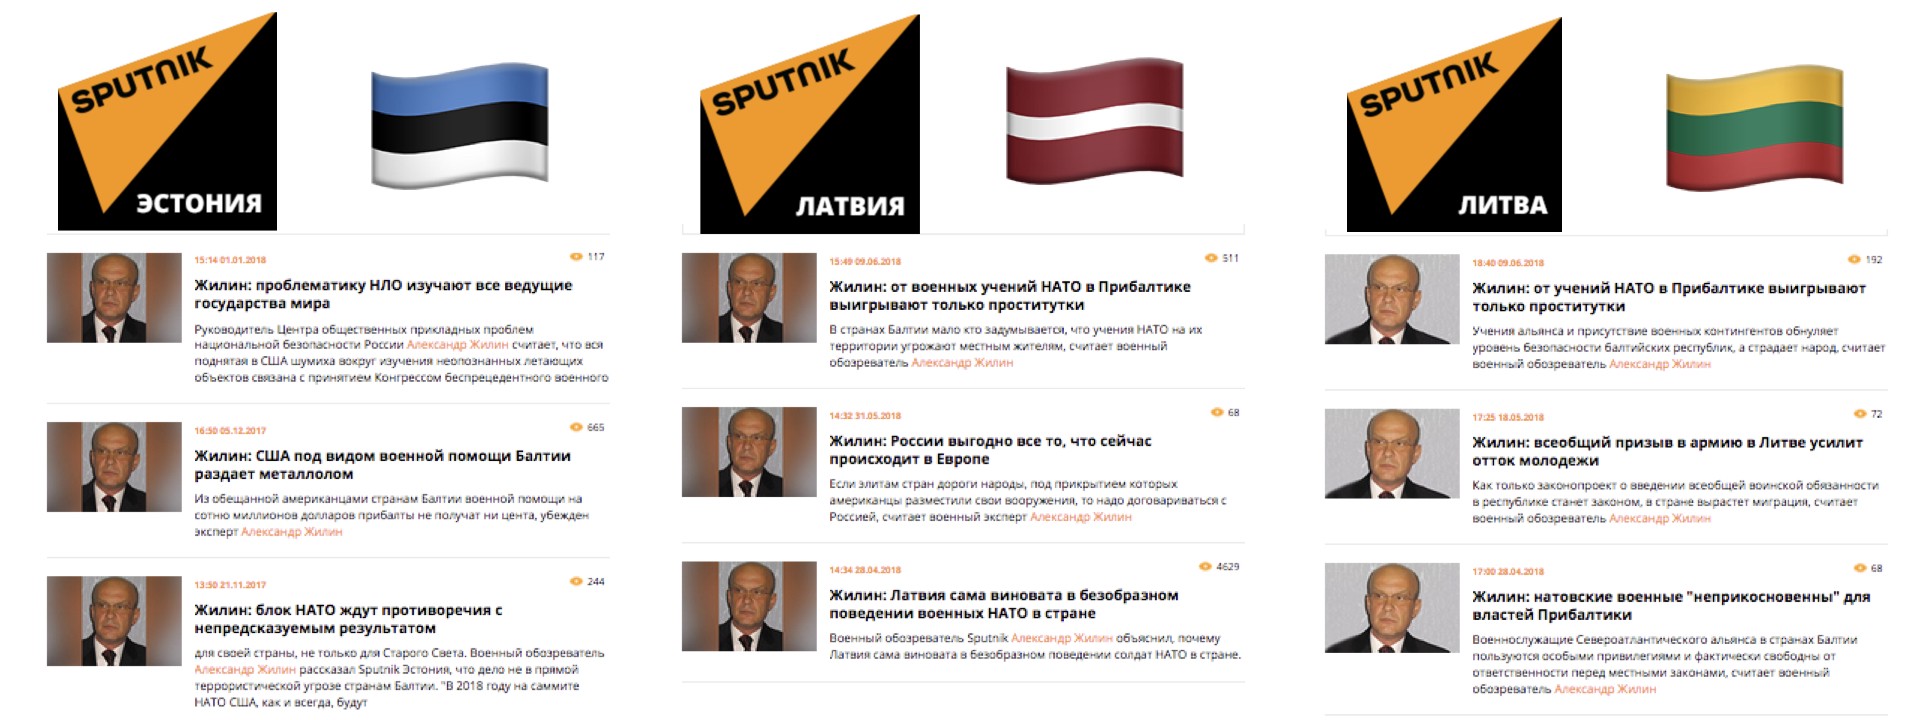 #BalticBrief: Sputnik Targets NATO Exercise, Reveals Wider Narrative Trend